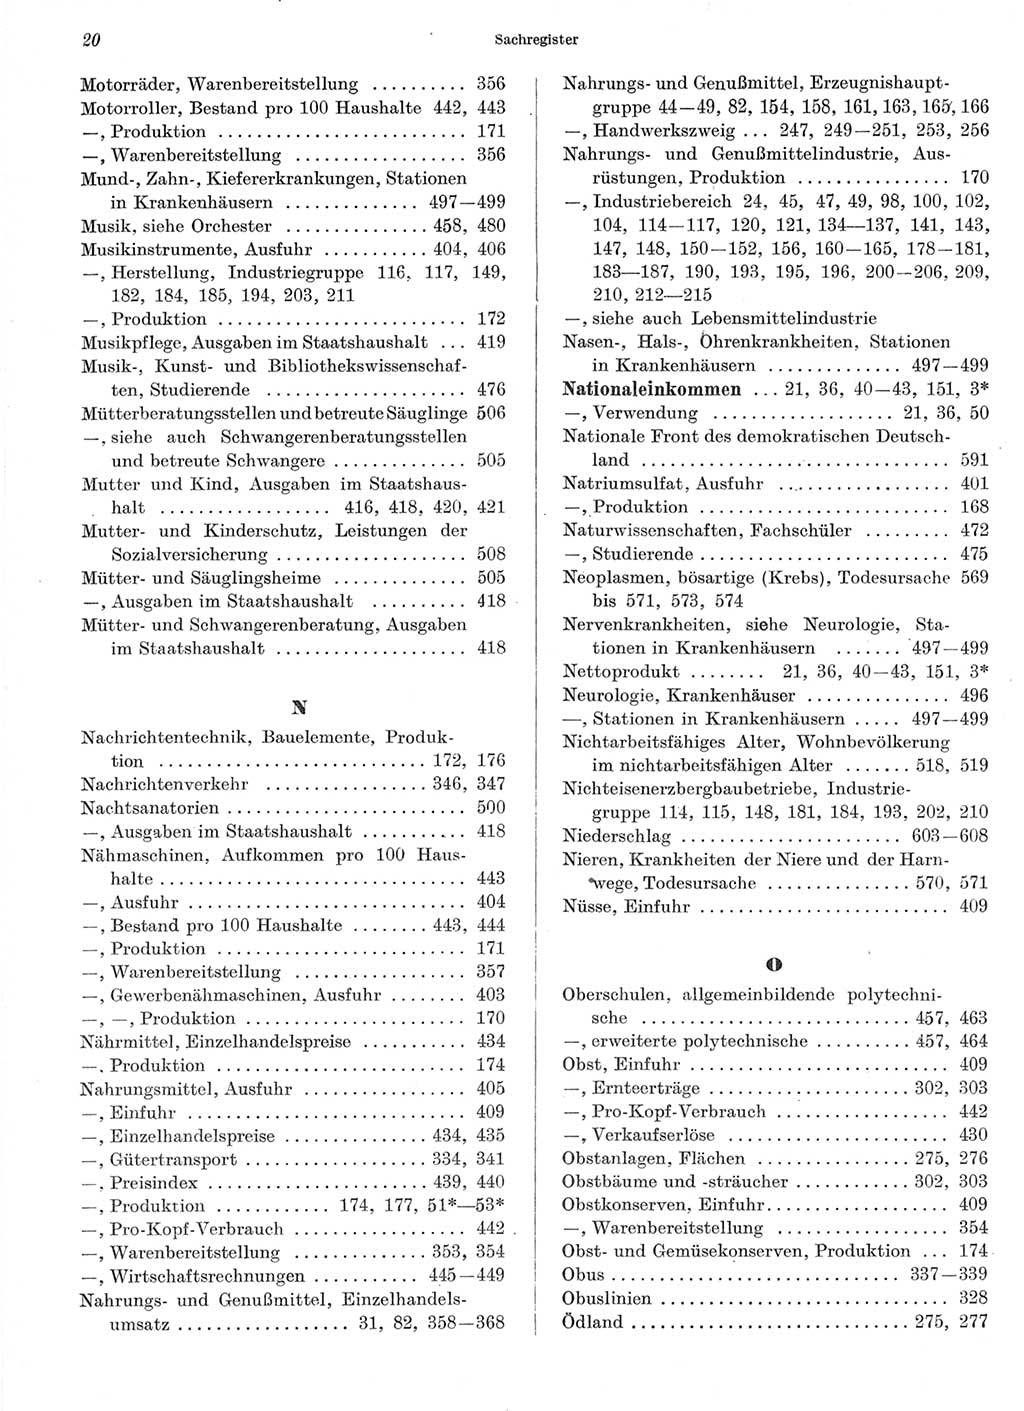 Statistisches Jahrbuch der Deutschen Demokratischen Republik (DDR) 1966, Seite 20 (Stat. Jb. DDR 1966, S. 20)